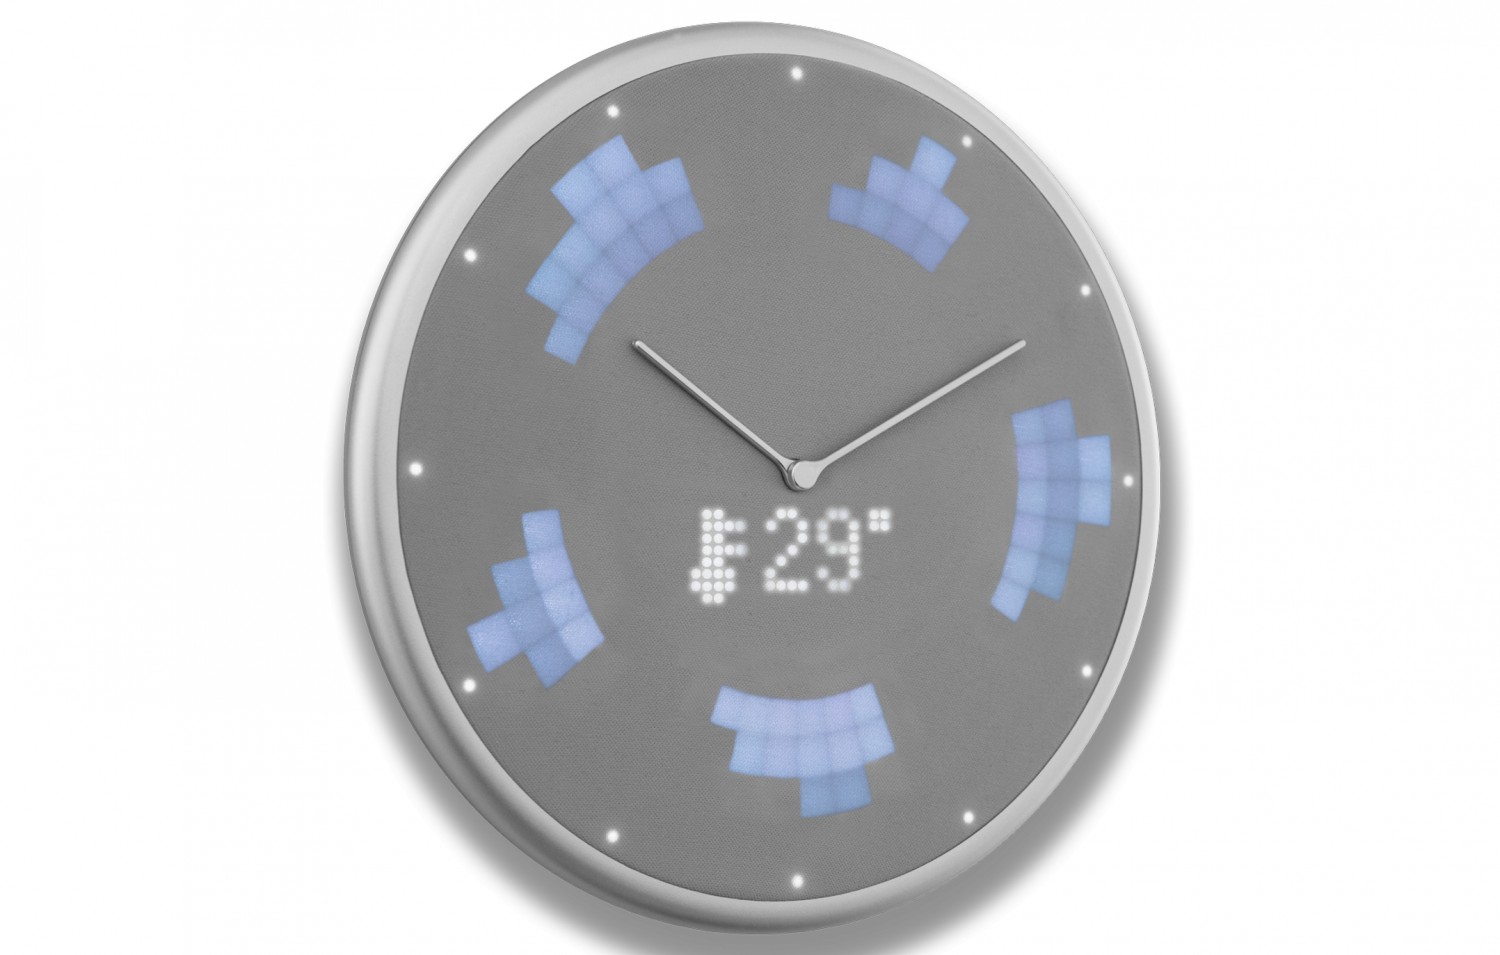 Produktvorstellung Glance Clock: Smarte Wanduhr koppelt sich mit dem Smartohone - Wetter, Termine, Anrufe - News, Bild 1